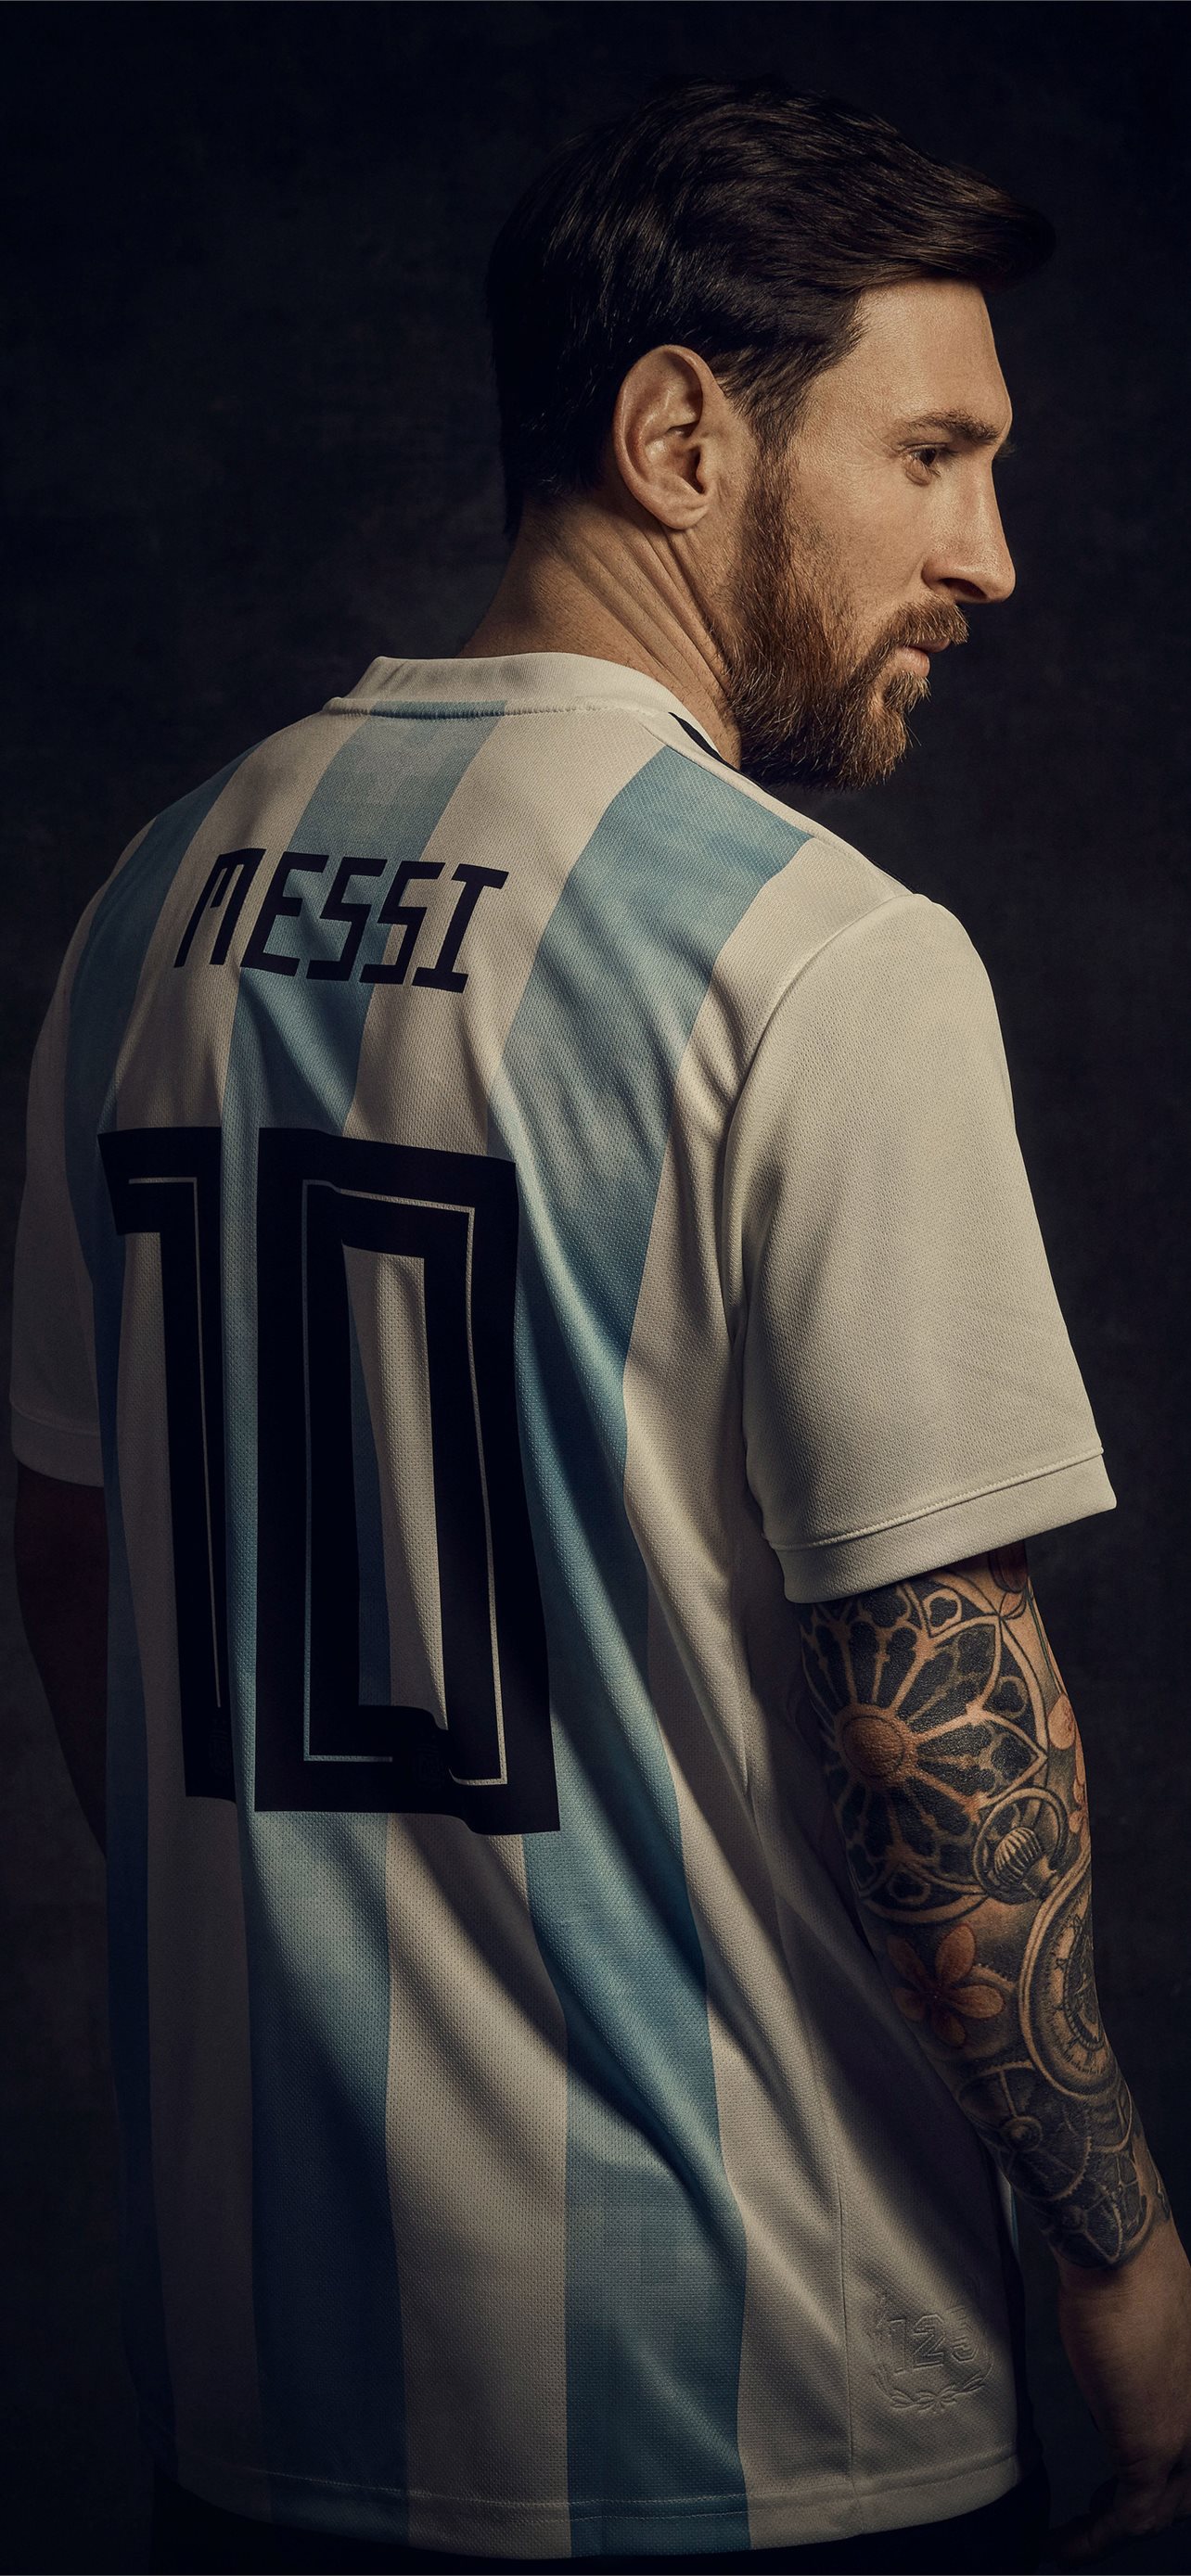 Hình nền Messi cho iPhone đẹp nhất - giới thiệu đến bạn tuyệt phẩm về cầu thủ xuất sắc của Argentina. Với chất lượng HD và độ phân giải tương thích với các dòng iPhone, những hình nền này sẽ khiến cho màn hình của bạn trở nên sống động và đẹp mắt hơn bao giờ hết.